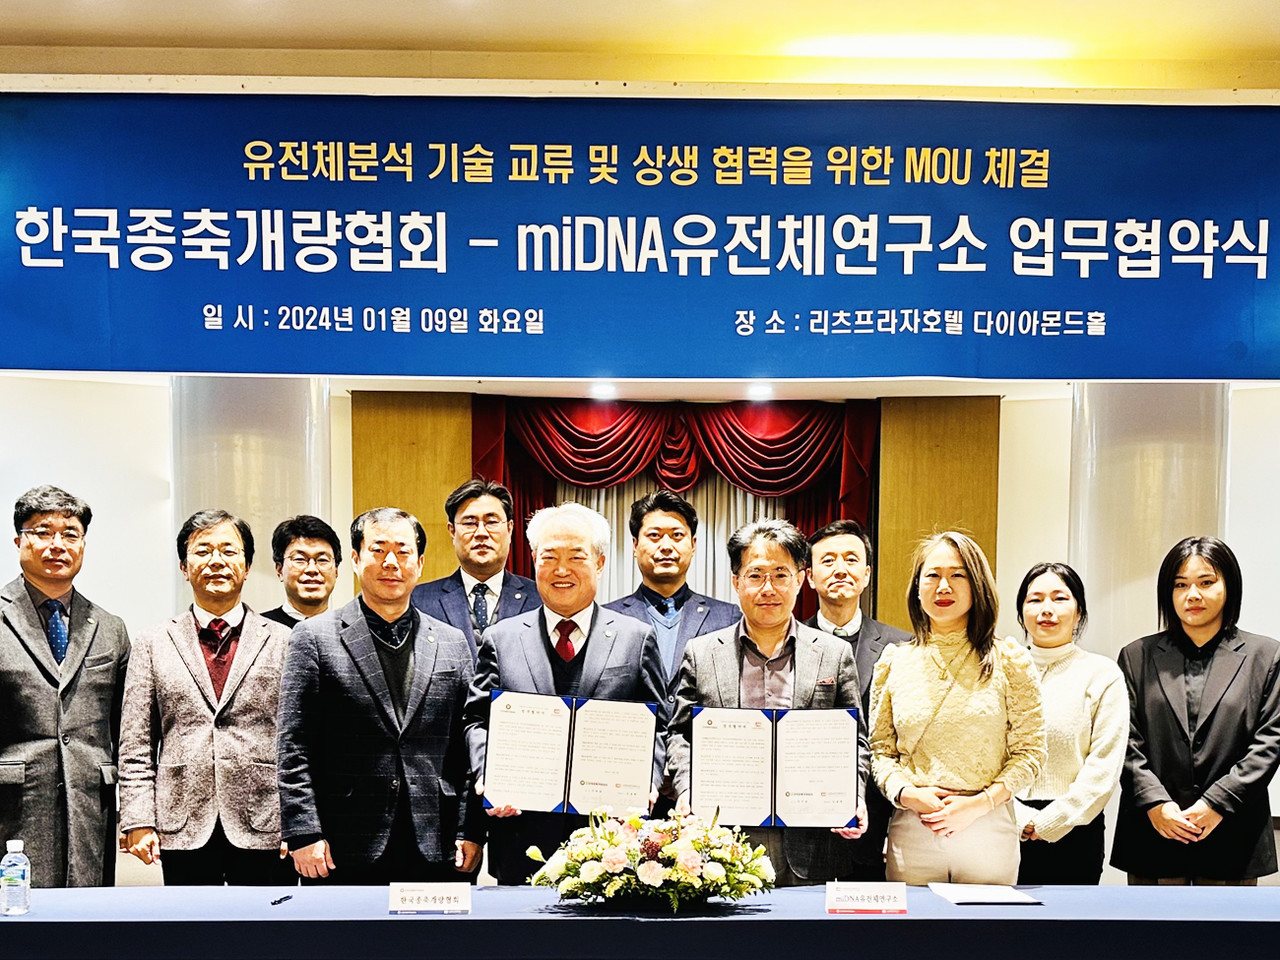 한국종축개량협회(회장 이재윤)가 ‘유전체 분석사업 고도화’를 위해 지난 9일 유전체 분석기관인 miDNA유전체연구소(대표 심용택)와 업무협약을 체결했다.